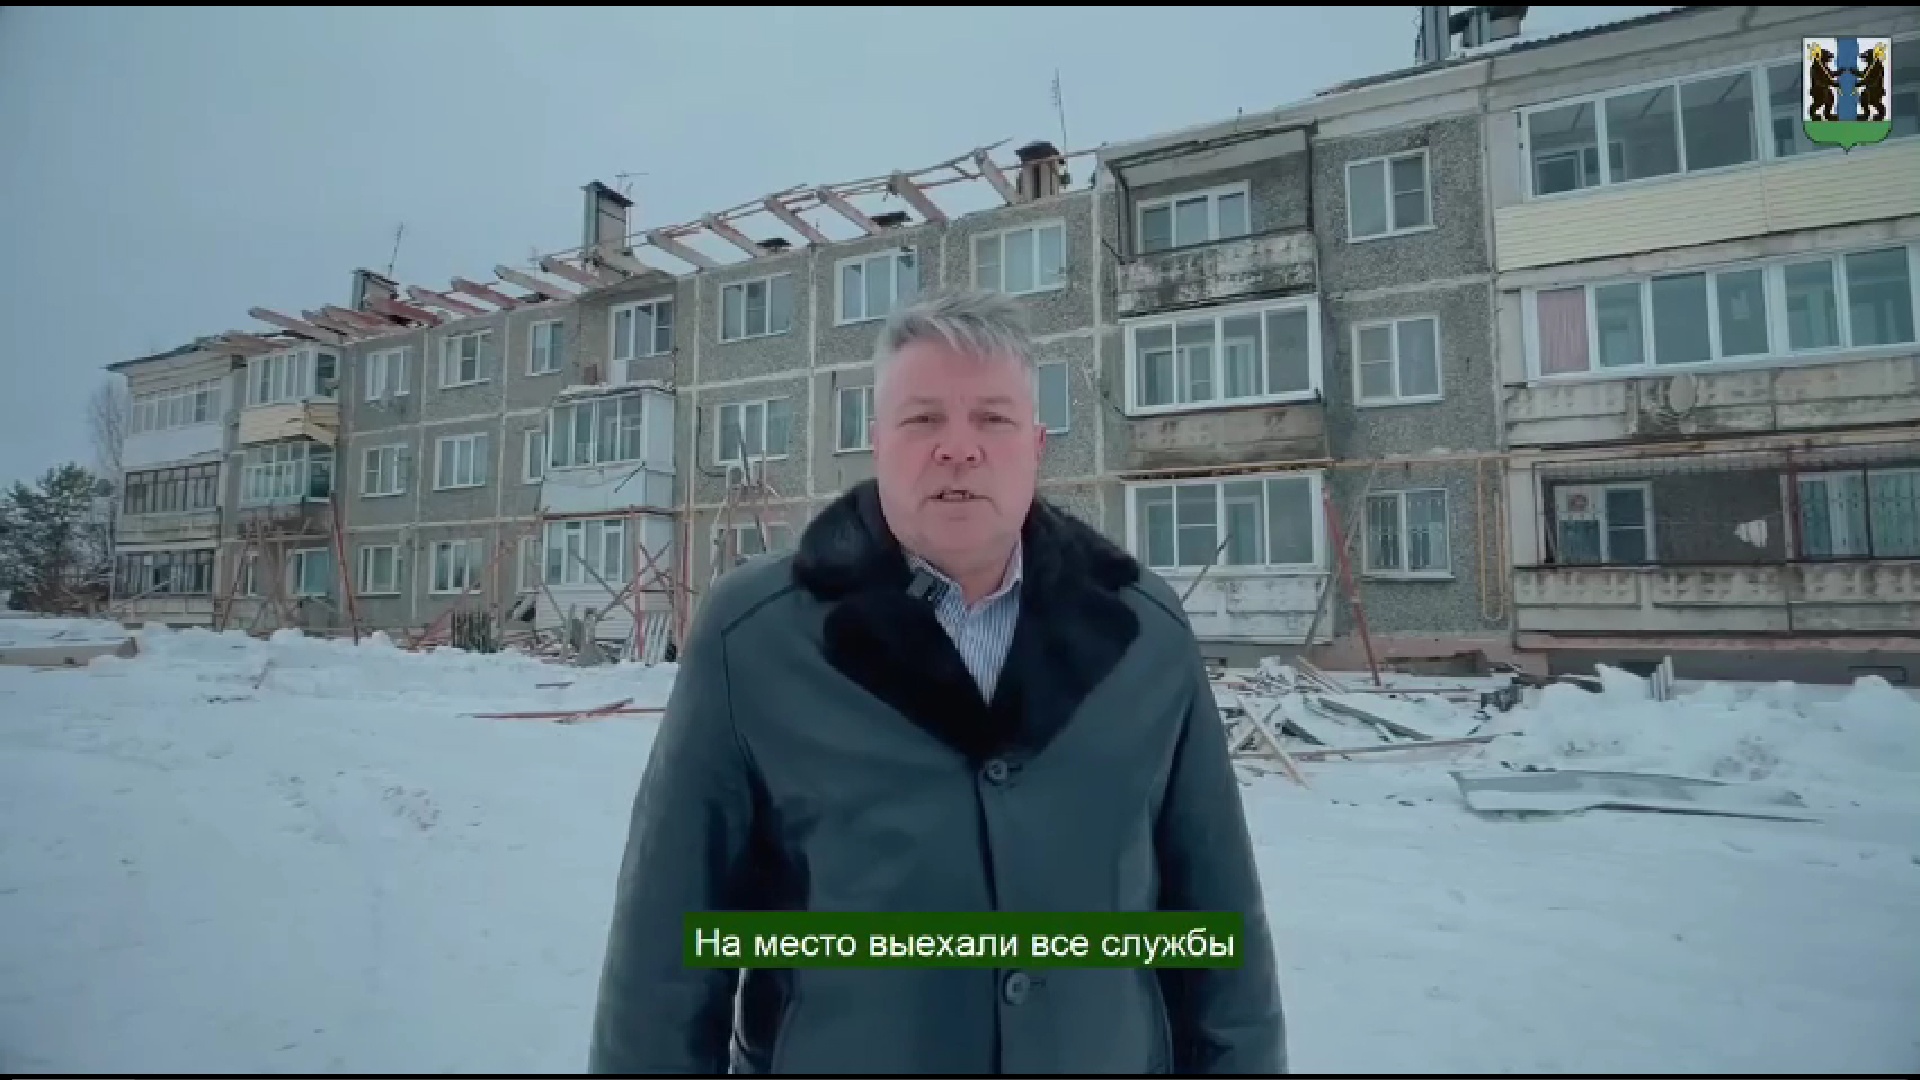 Под Ярославлем эксперты обследовали дом с провалившейся от снега крышей